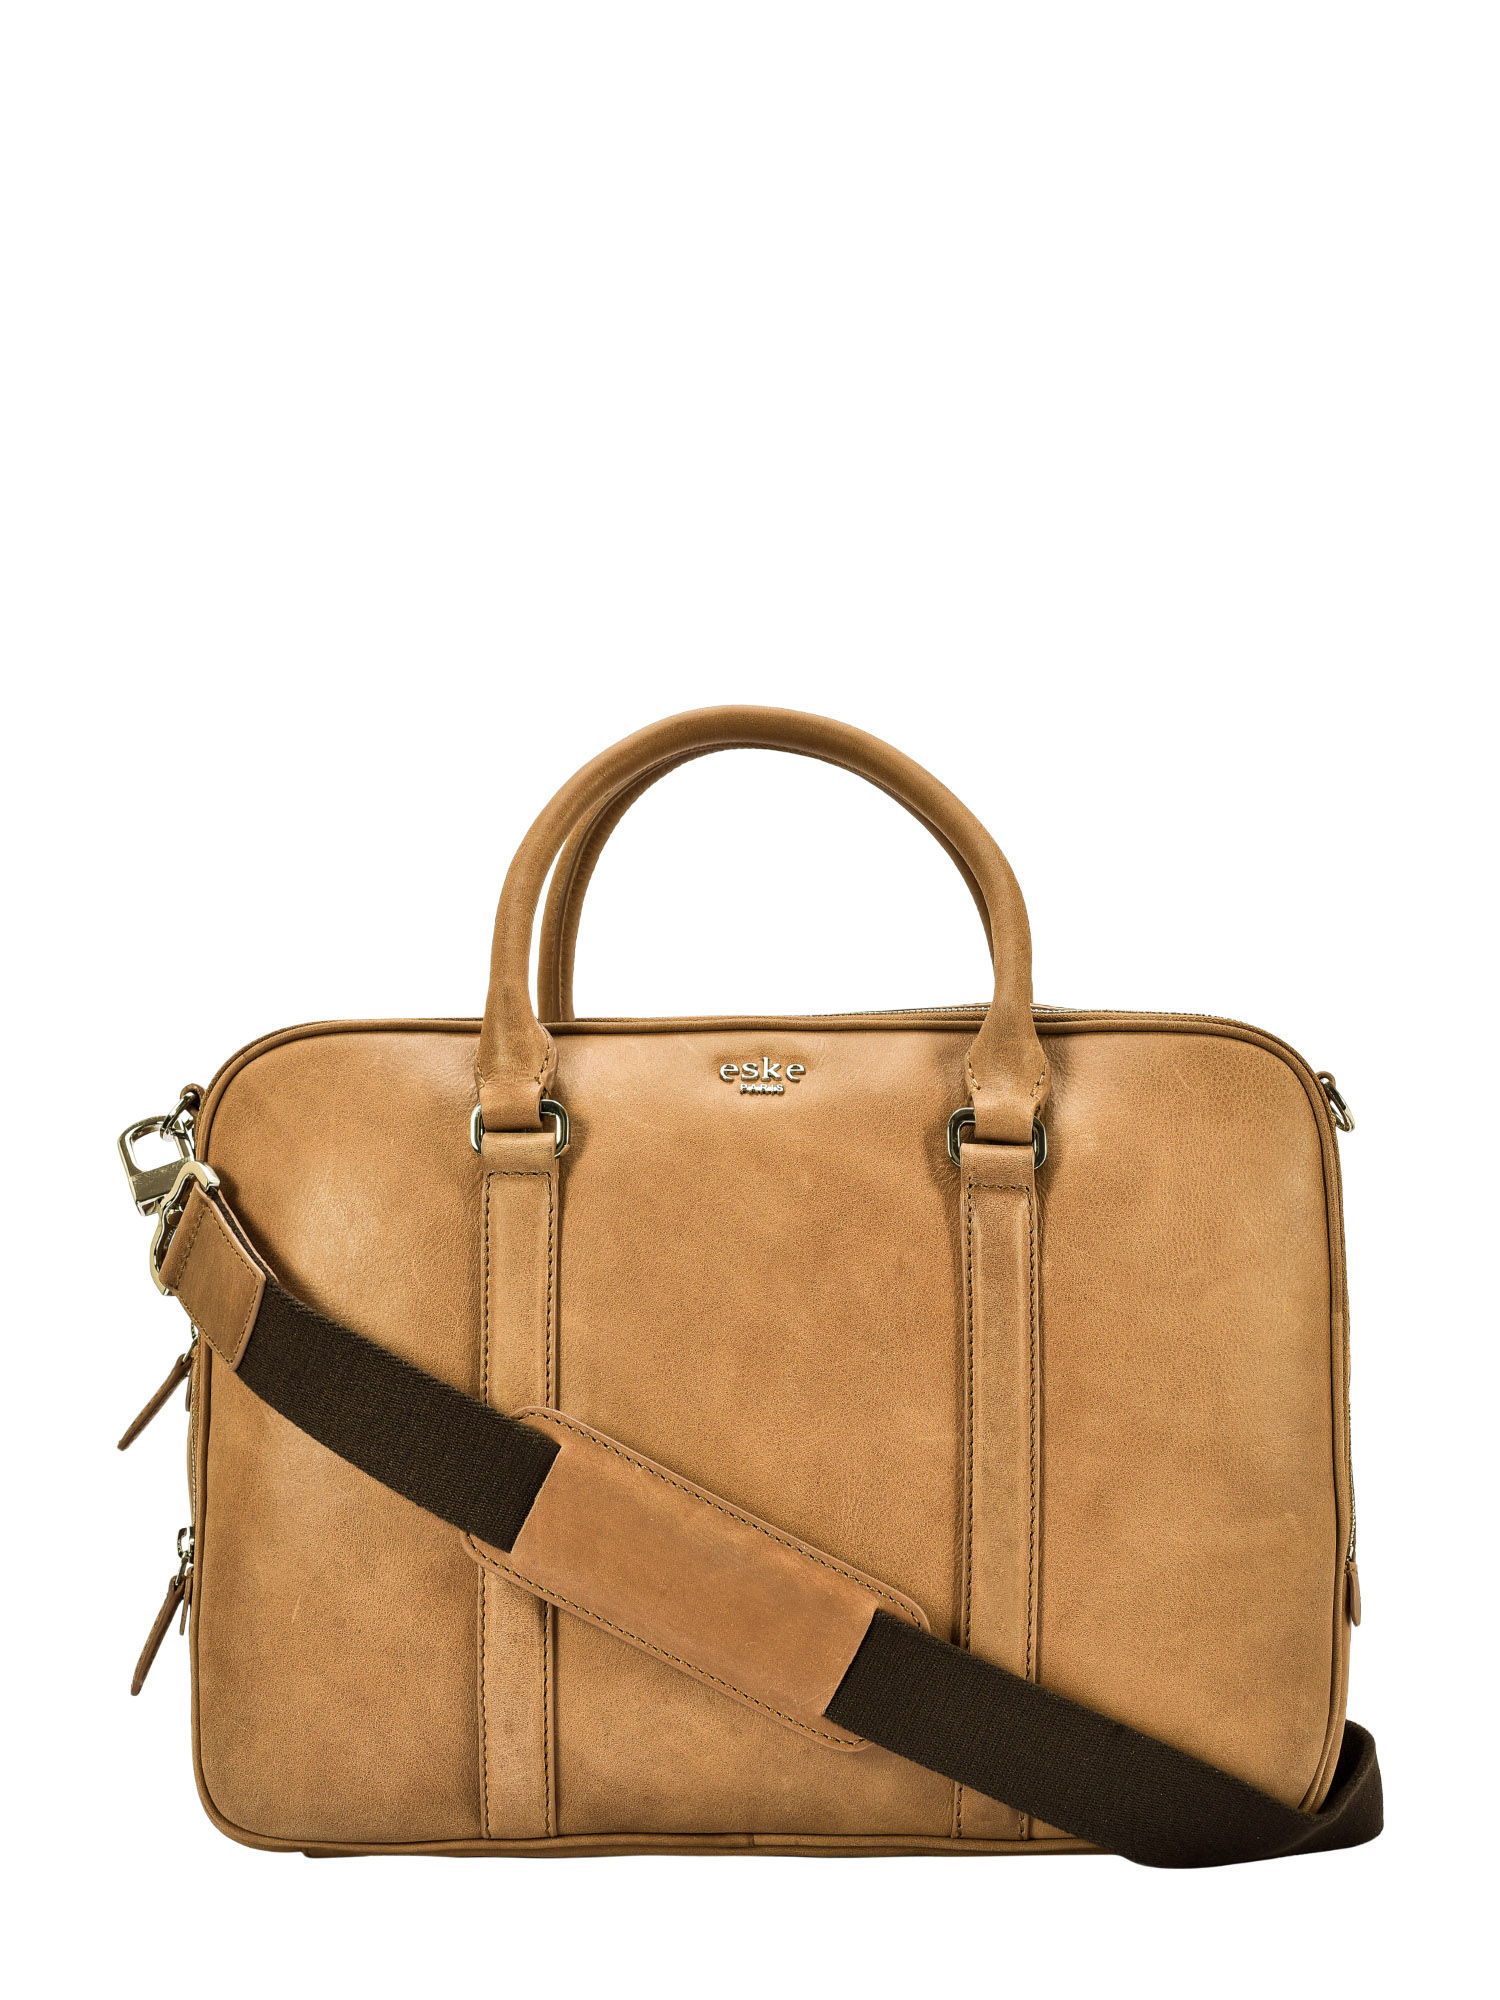 Eske Paris Cole Leather Laptop Bag,Brown